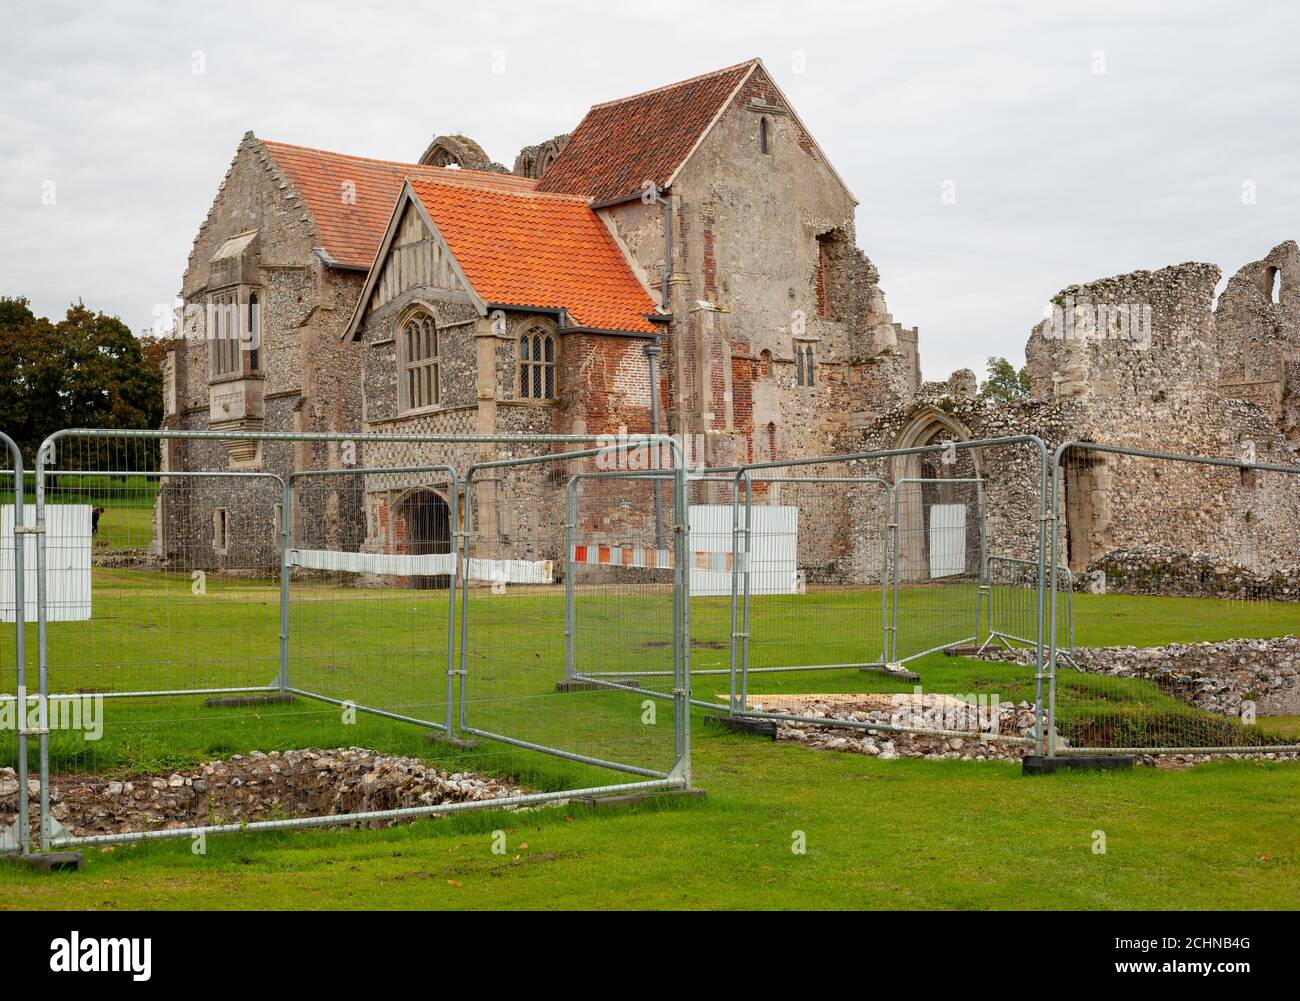 El concepto del Patrimonio de Gran Bretaña - barreras metálicas protegen el sitio de las obras de conservación en un sitio monumento antiguo, Castillo Acre Priory, Norfolk, Gran Bretaña. Foto de stock